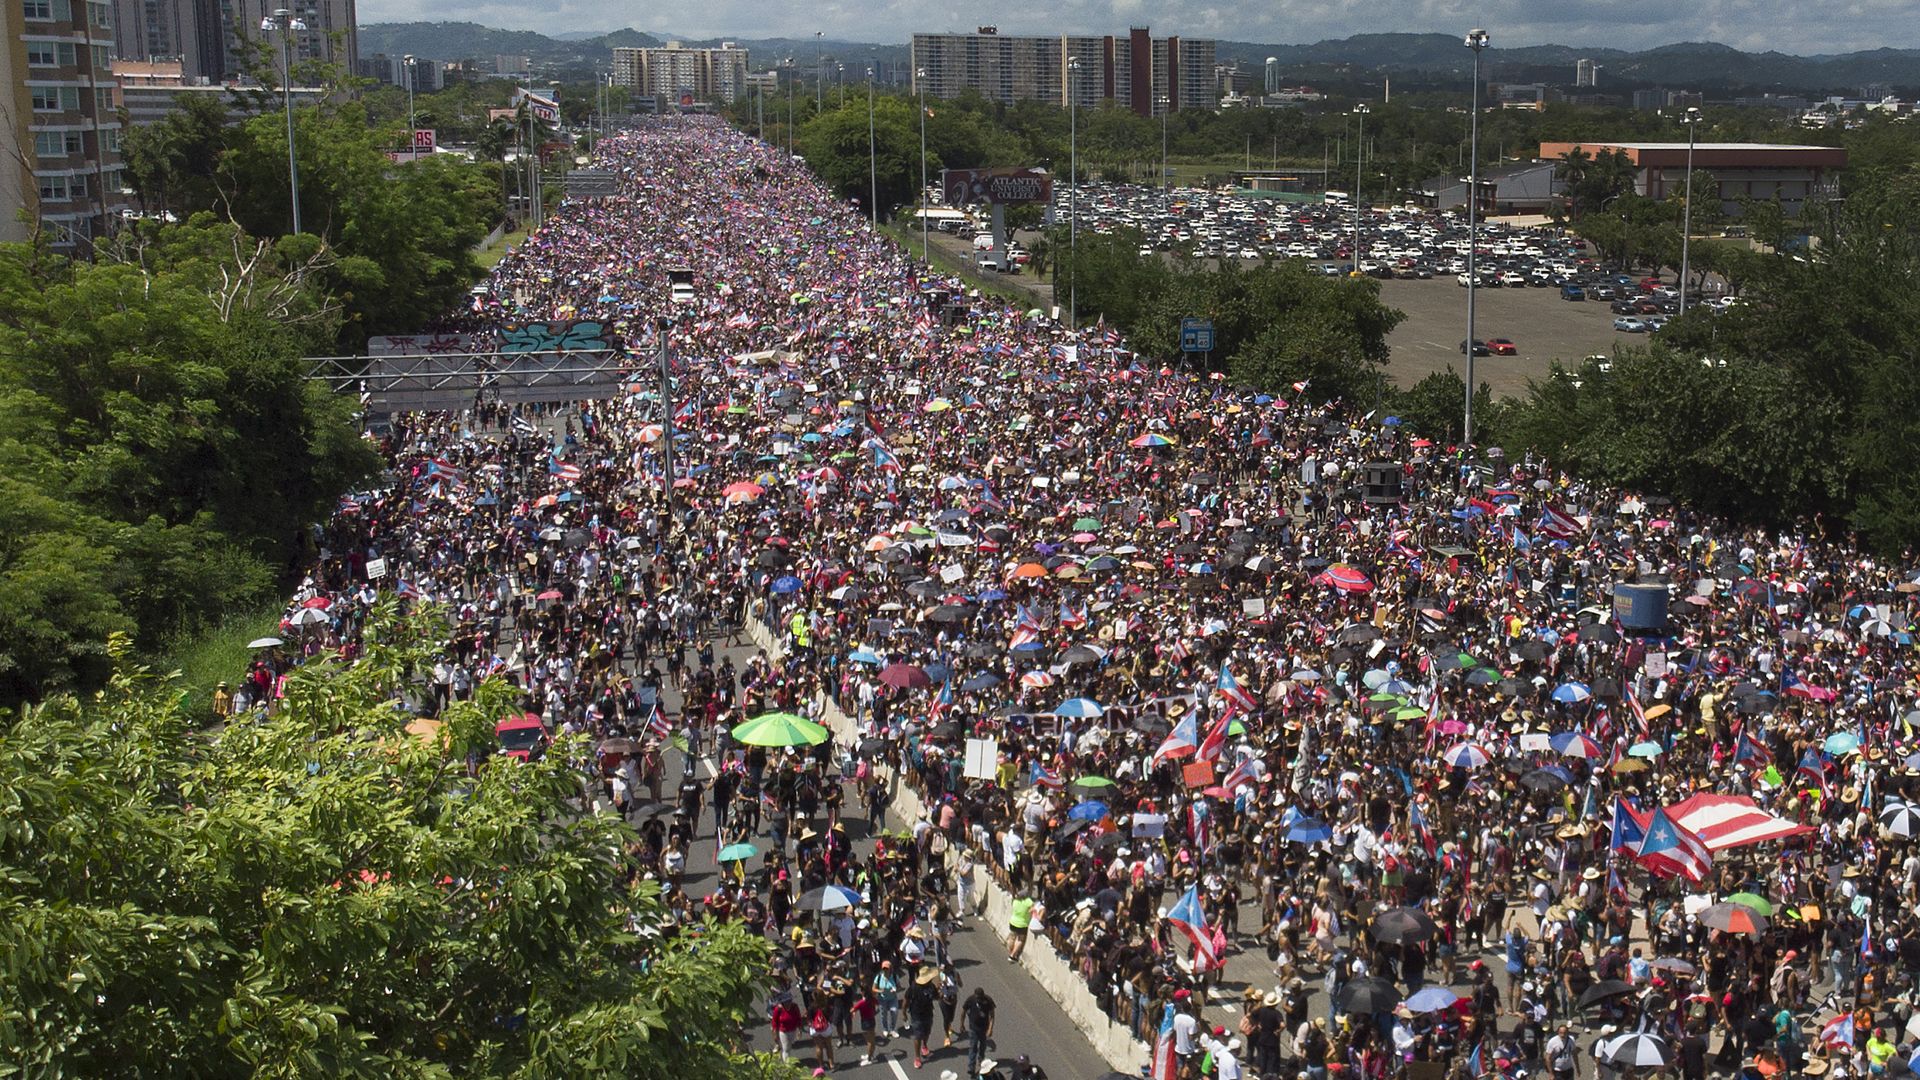 Protestors in Puerot Rico